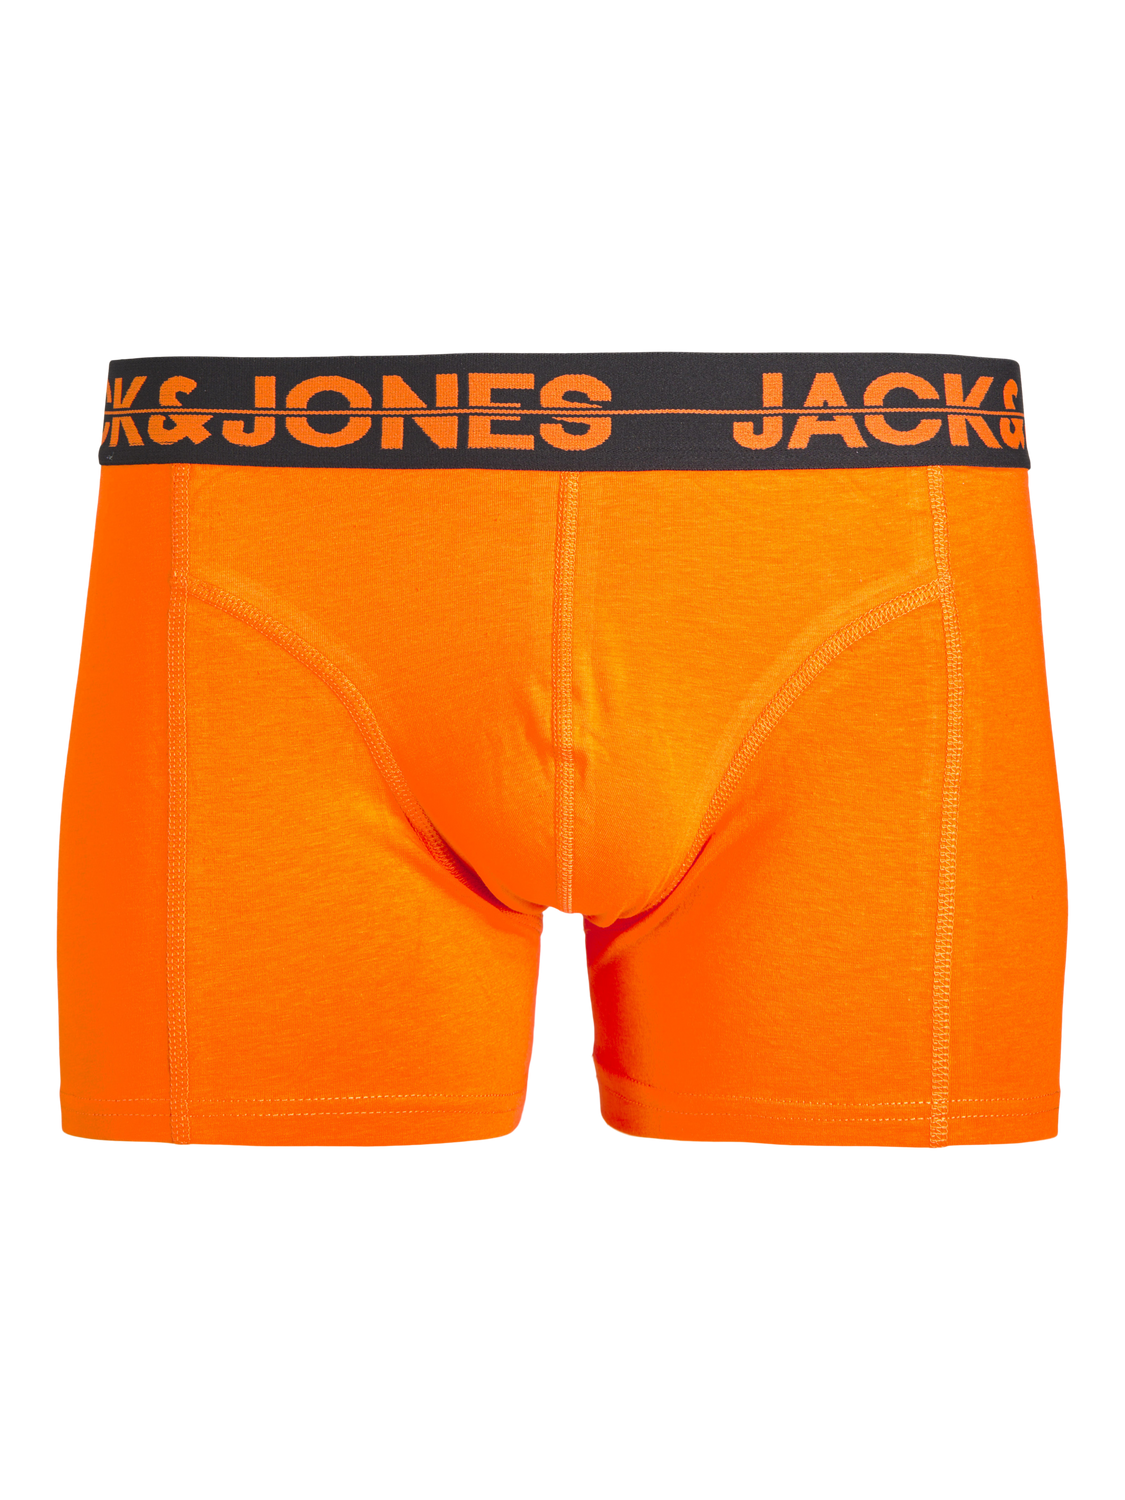 Jack & Jones Plus Size 5-pack Boxershorts -Victoria Blue - 12257404